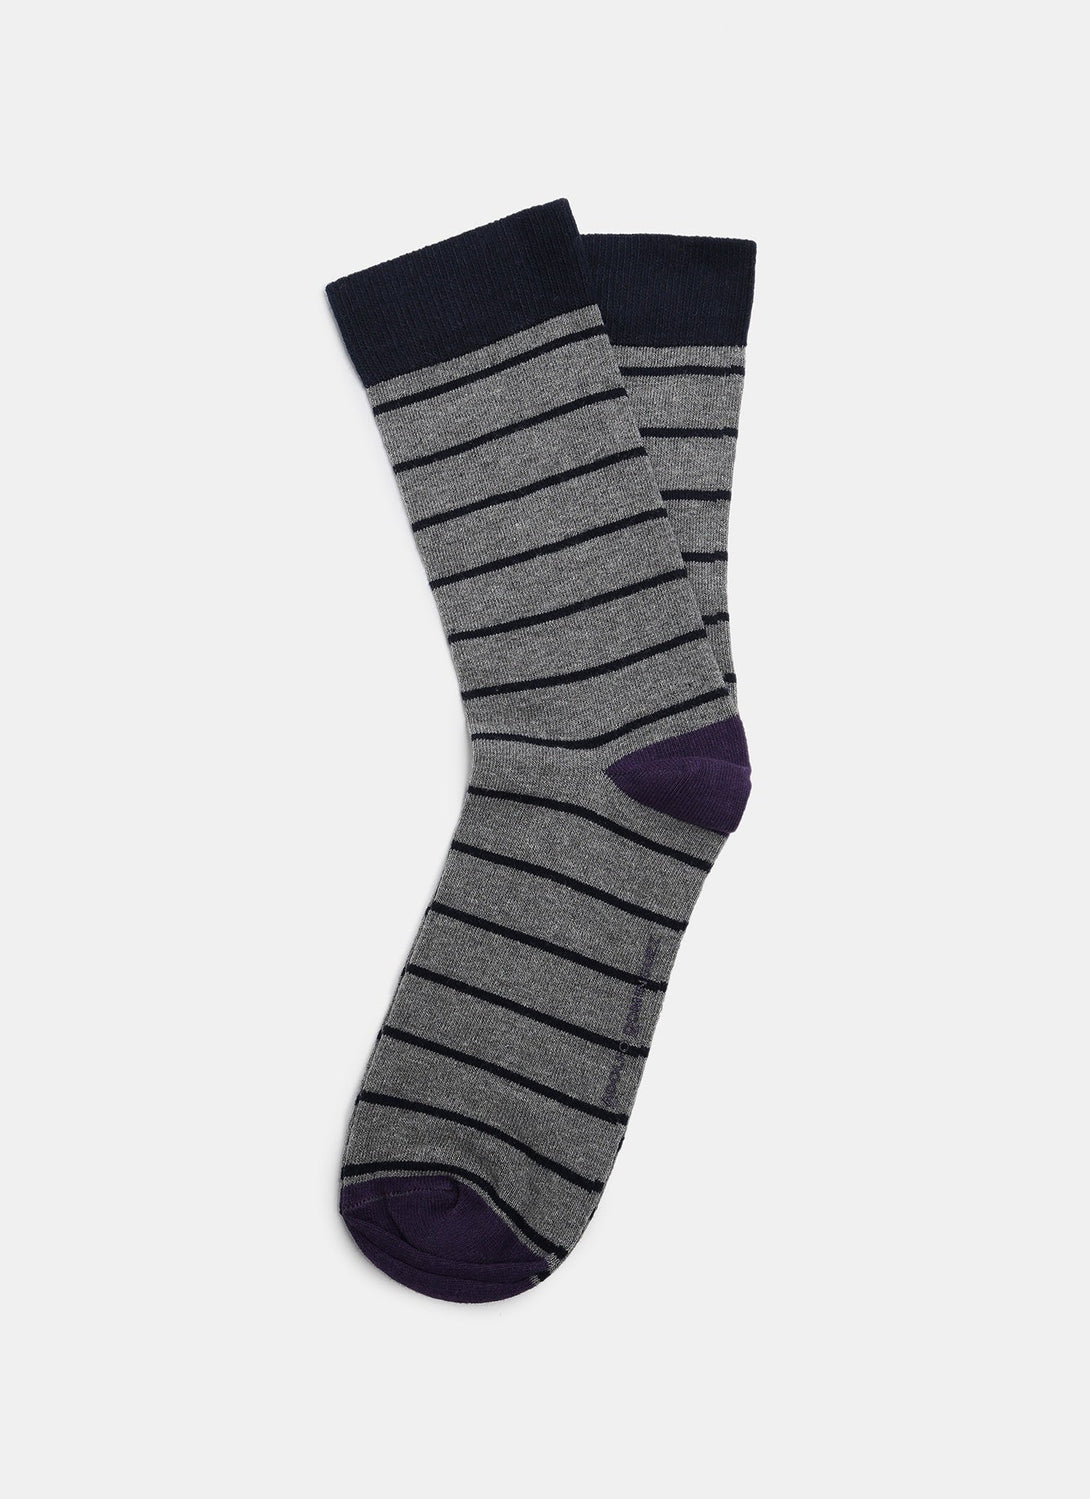 Men Socks | Grey Vigore Socks With Stripes by Spanish designer Adolfo Dominguez